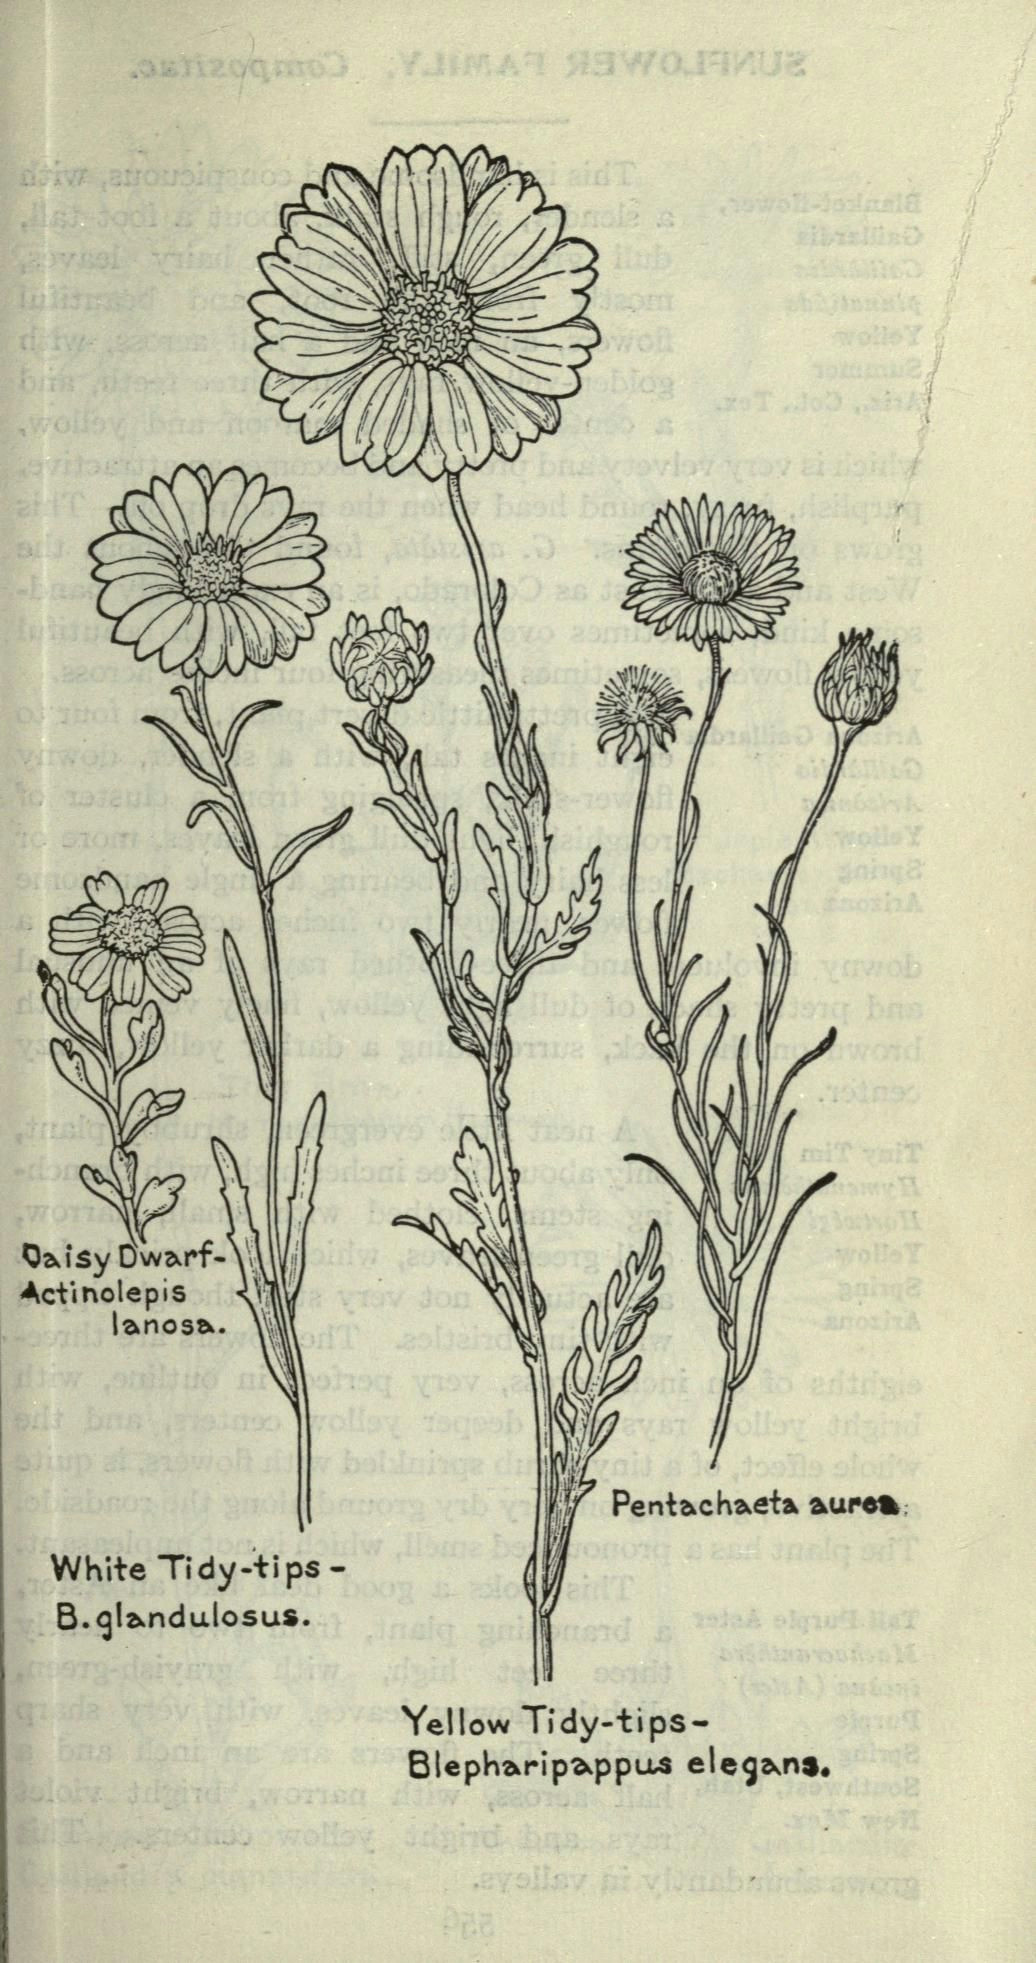 Drawings Of Flower Fields 1915 Field Book Of Western Wild Flowers Biodiversity Heritage